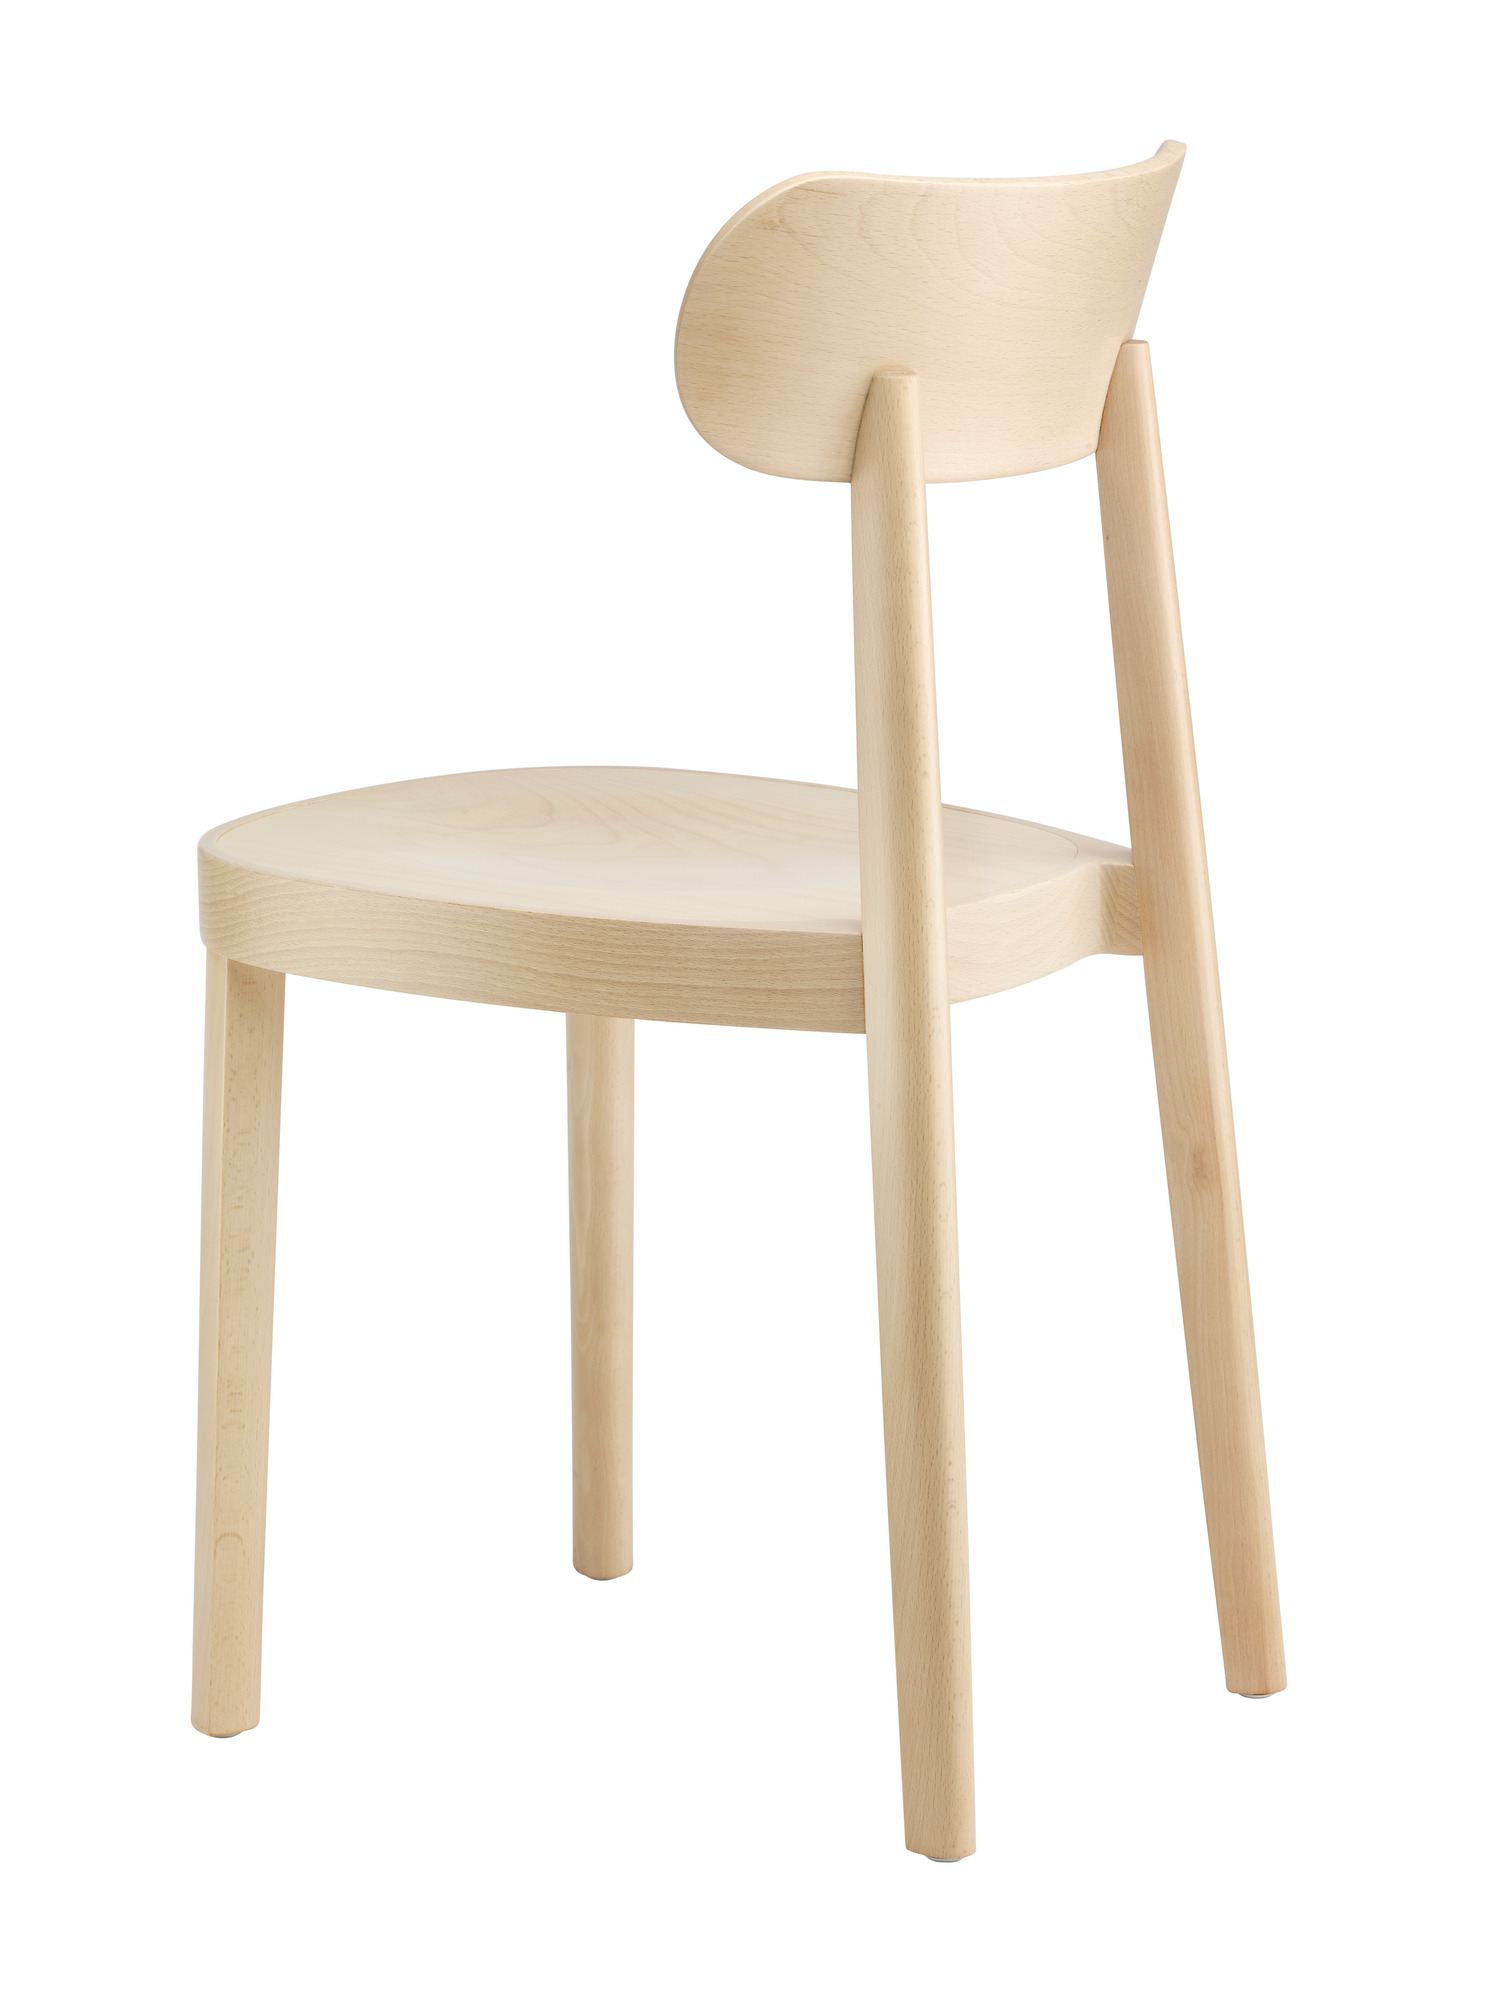 Wooden chair 118 Thonet